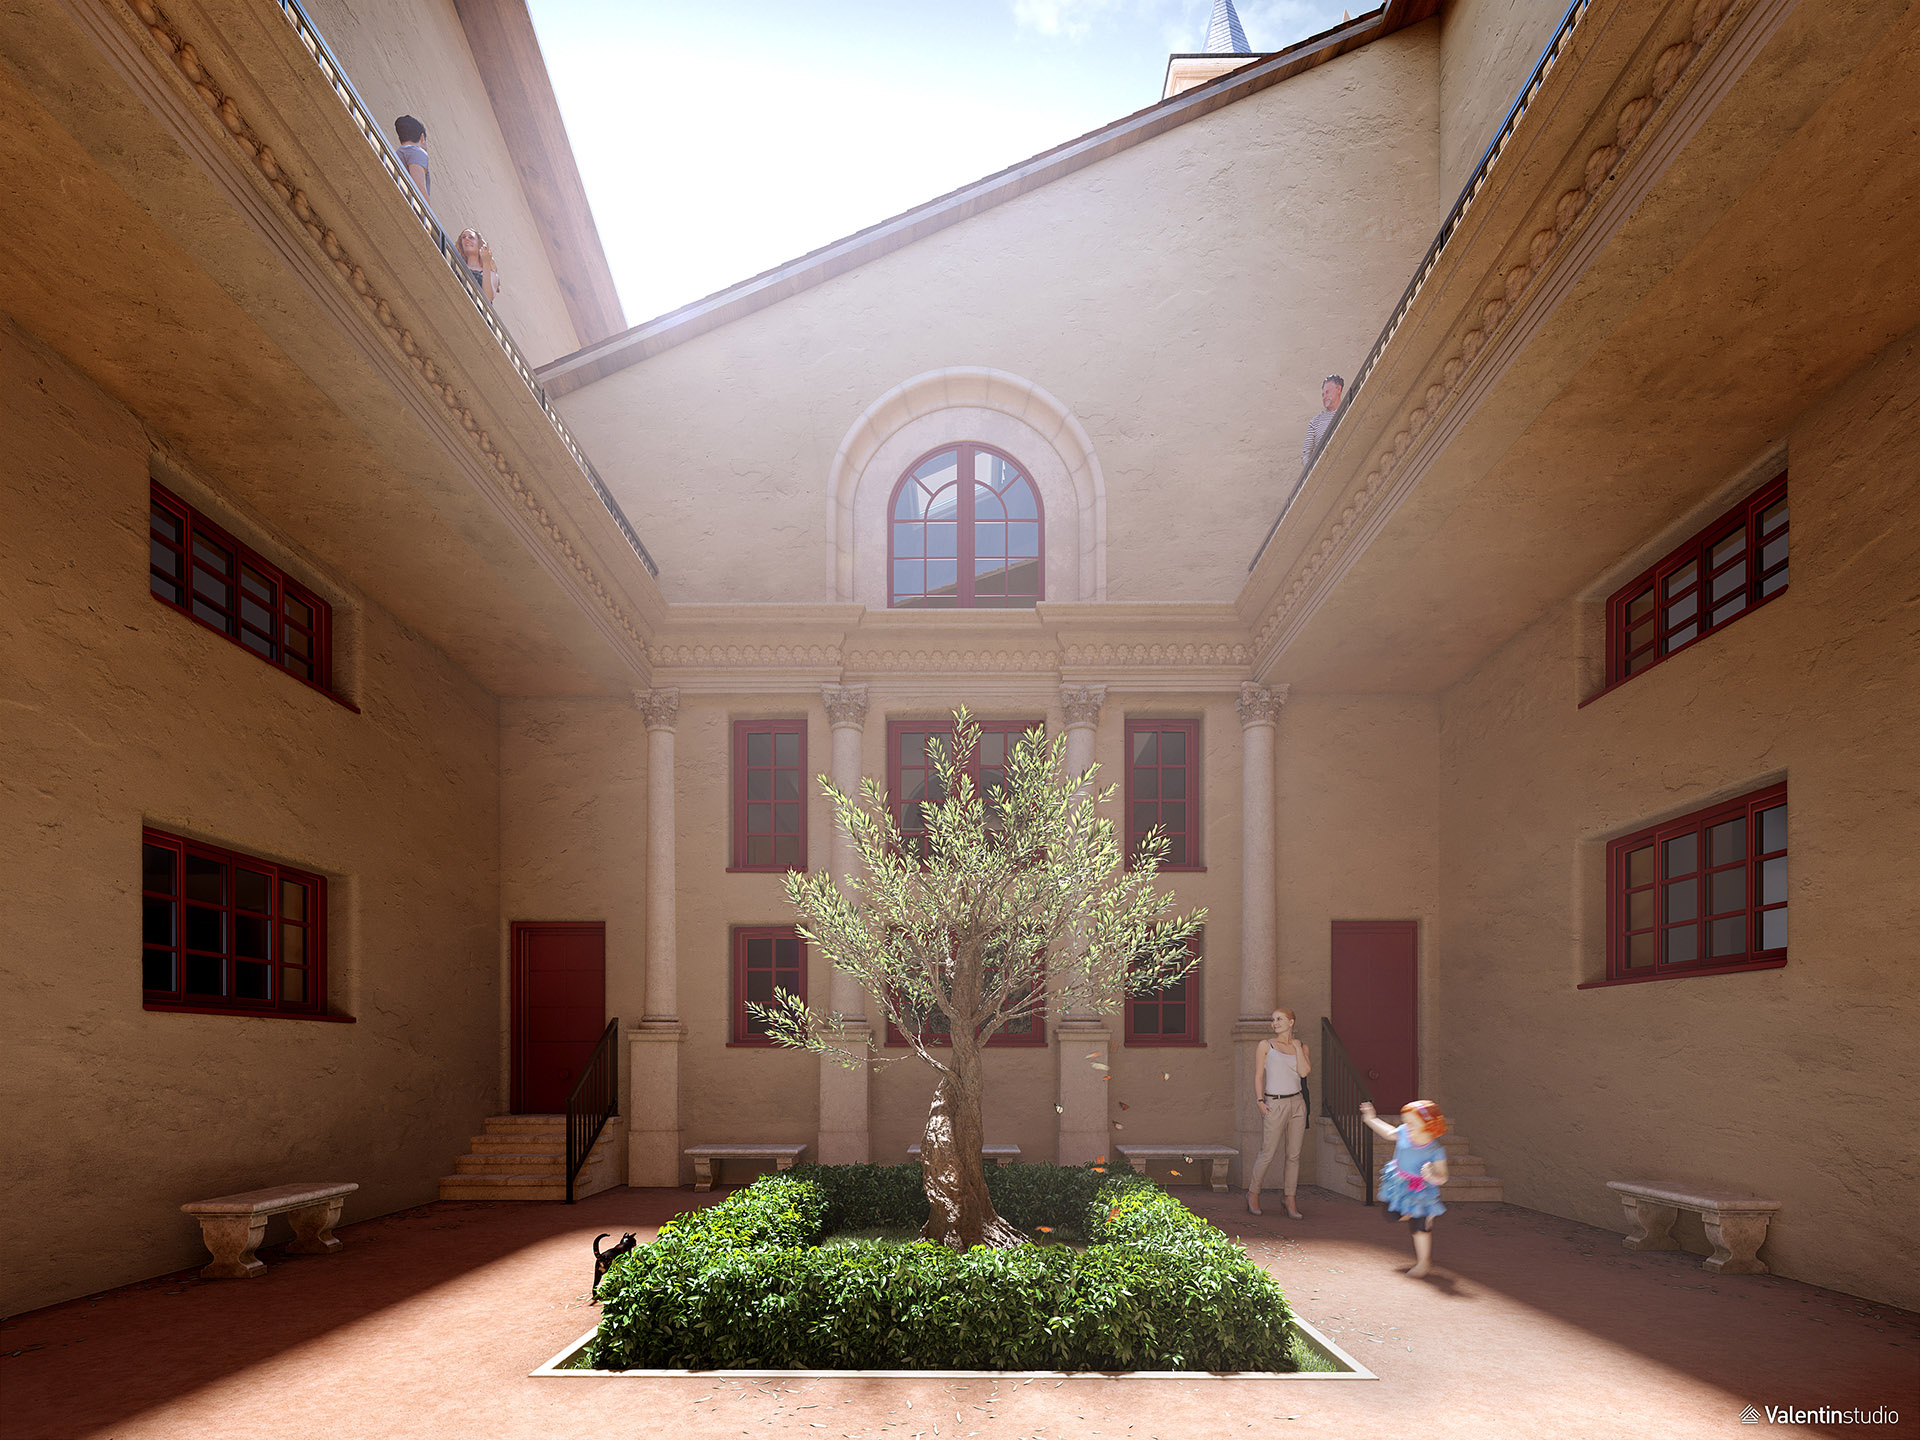 Représentation 3D du patio d'un couvent avec un espace végétal au centre